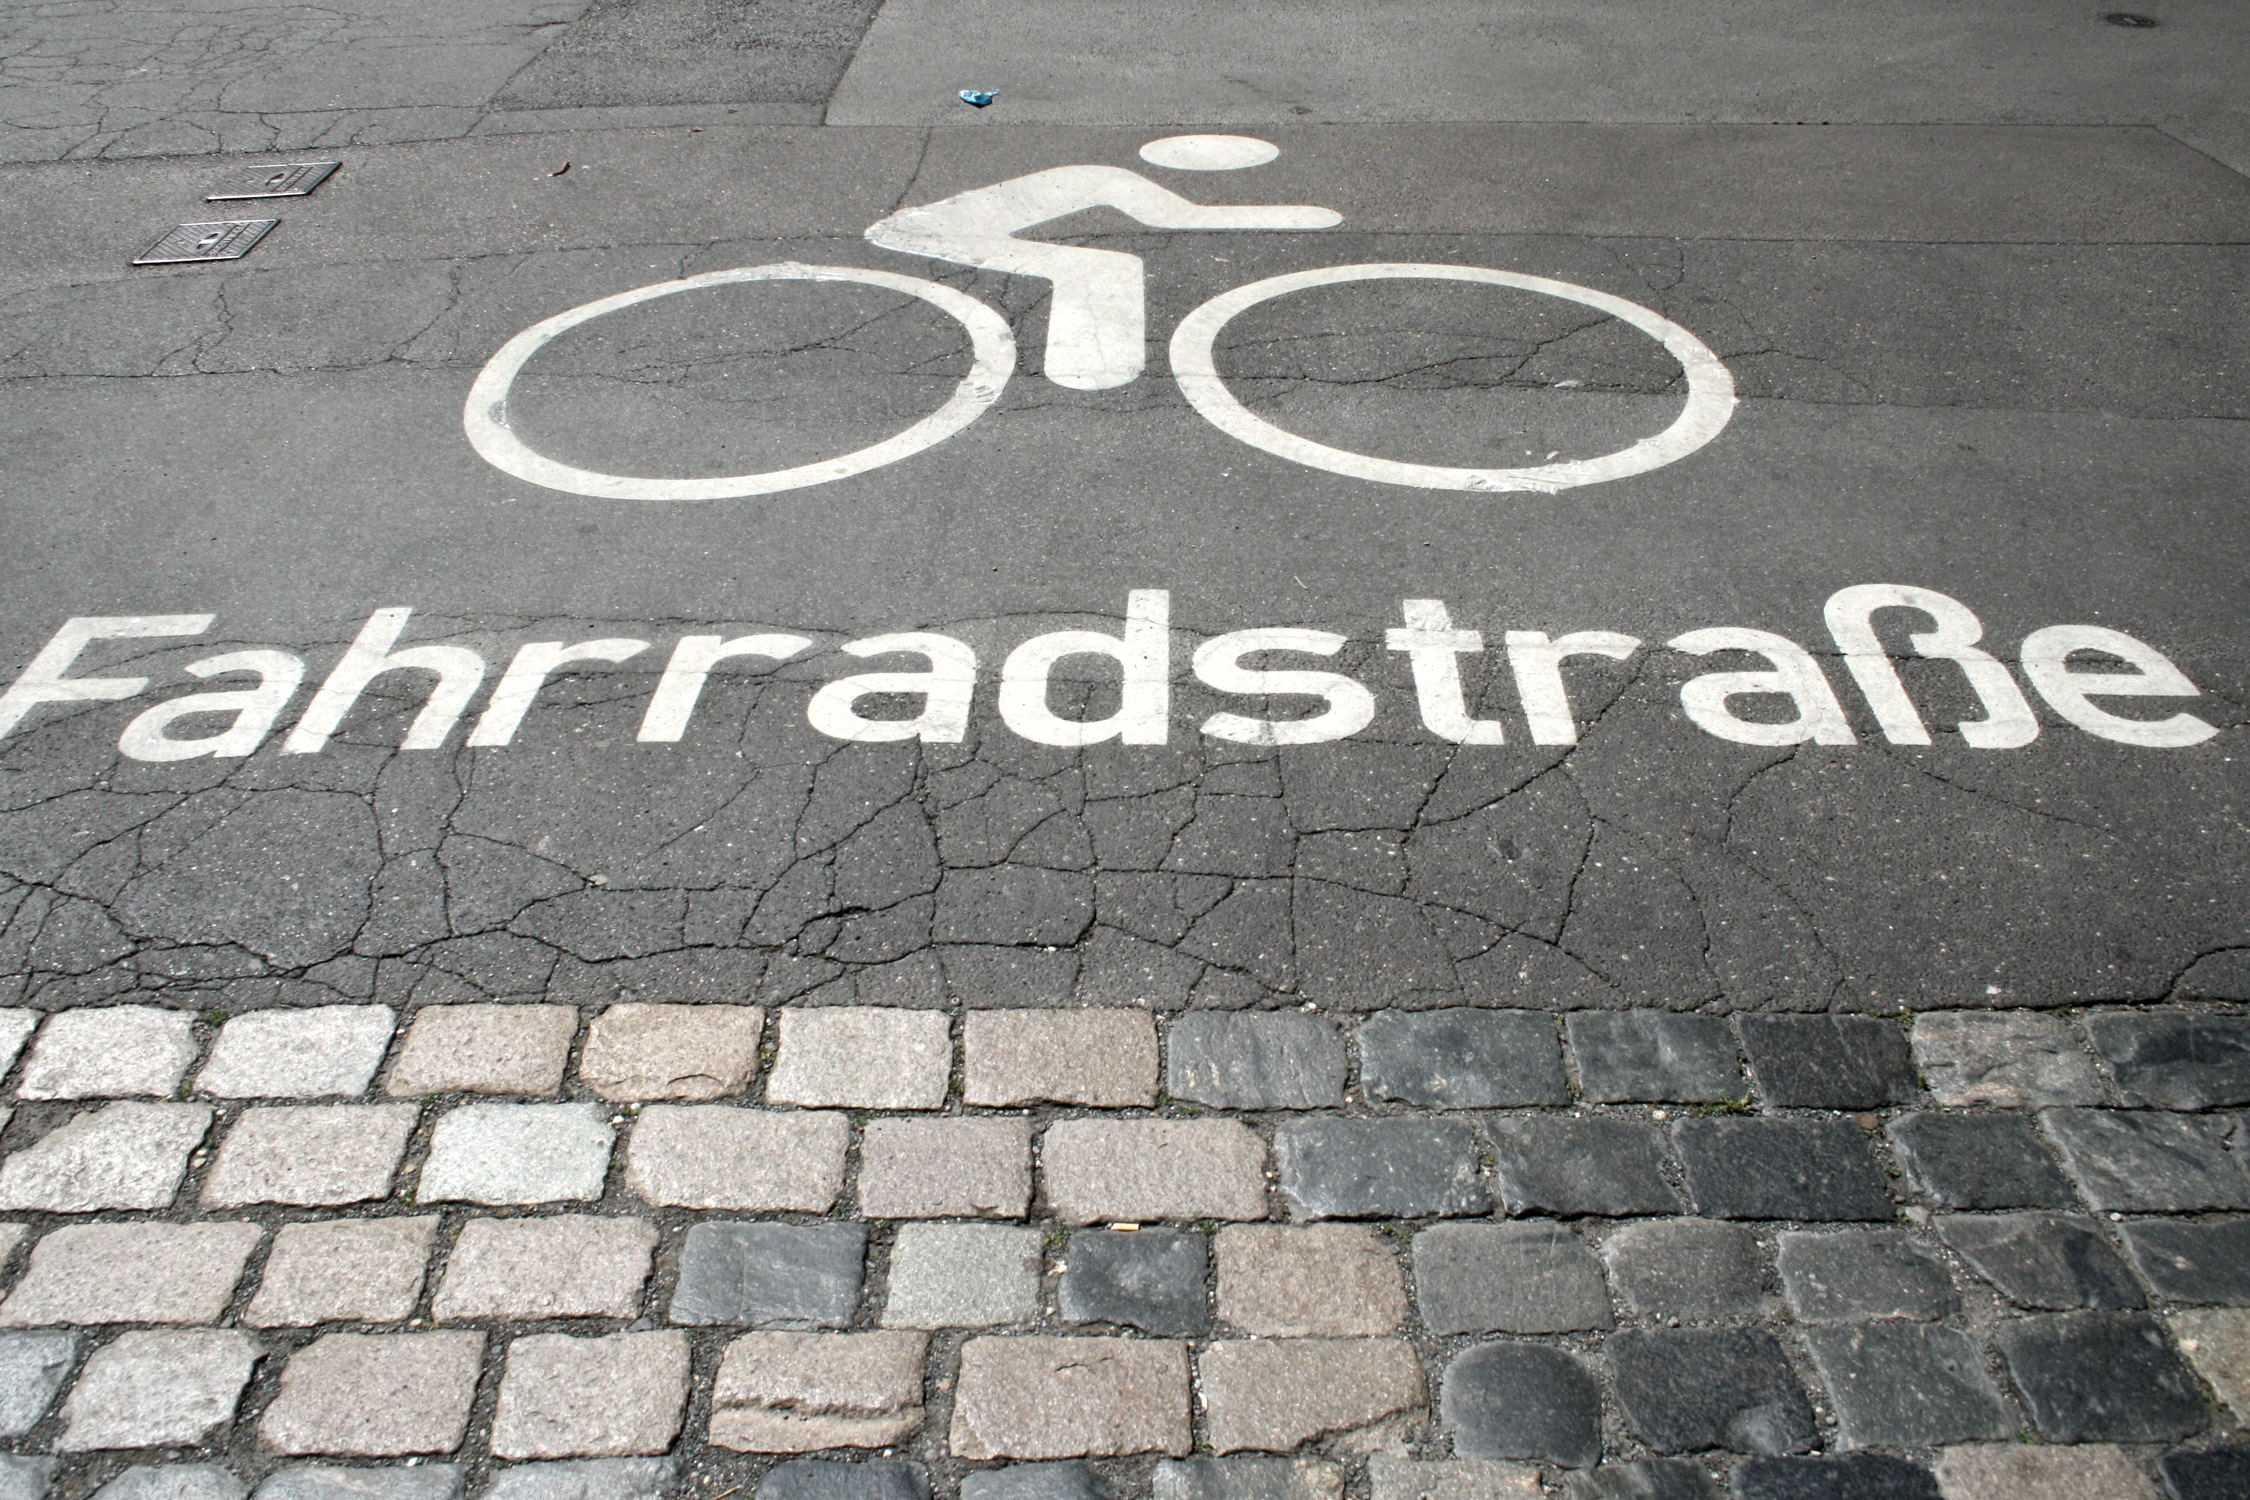 Fahrbahnmarkierung für eine Fahrradstraße, weiß auf grau.